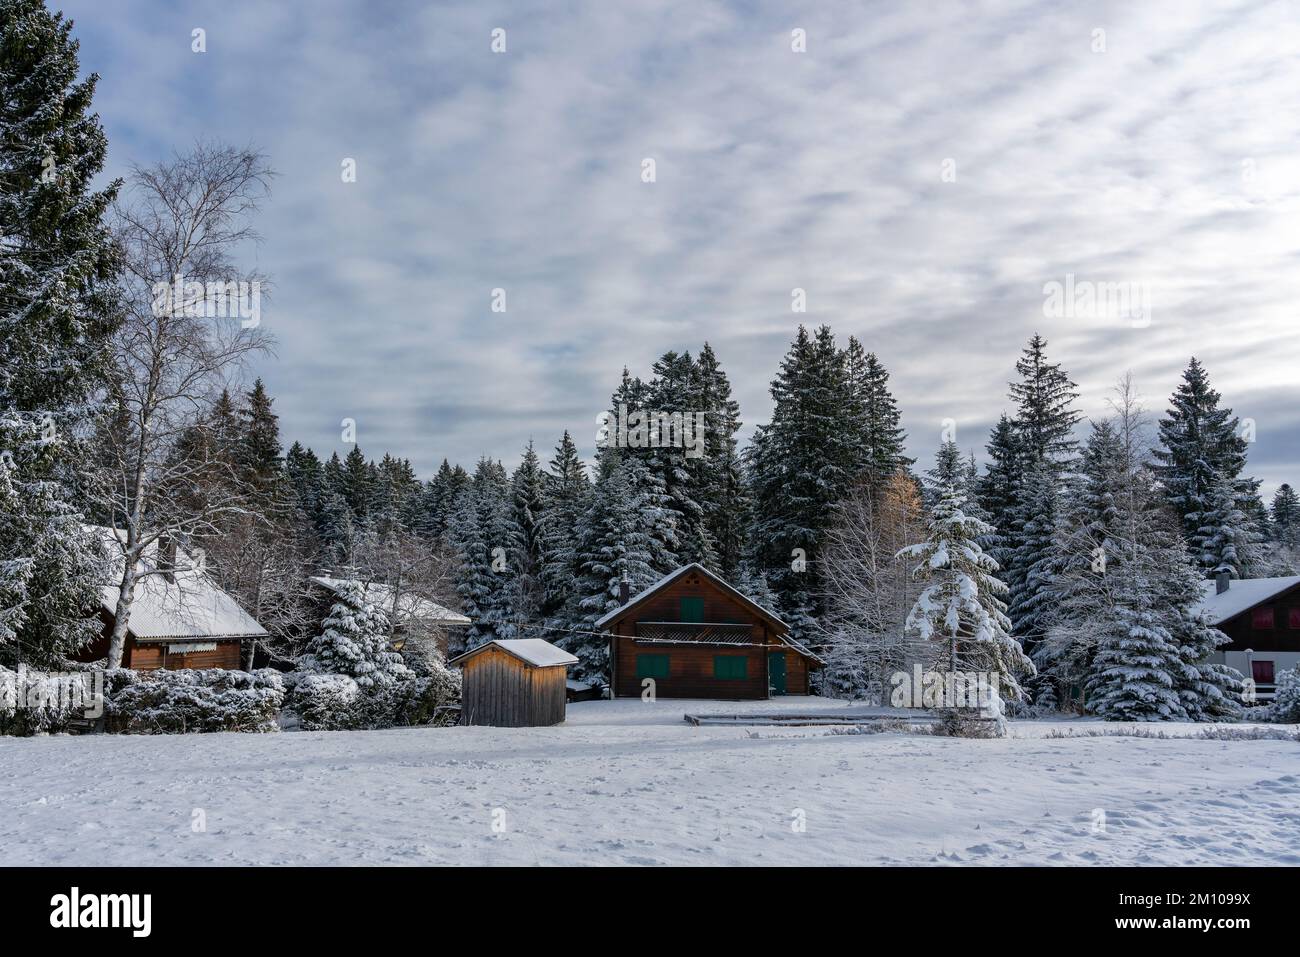 Holzhaus, Ferienhaus am Waldrand auf dem Hügel im ersten Schnee, verschneite Landschaft mit weißen Wiesen und Bäumen. Advent und Weihnachtszeit Ferien Stock Photo